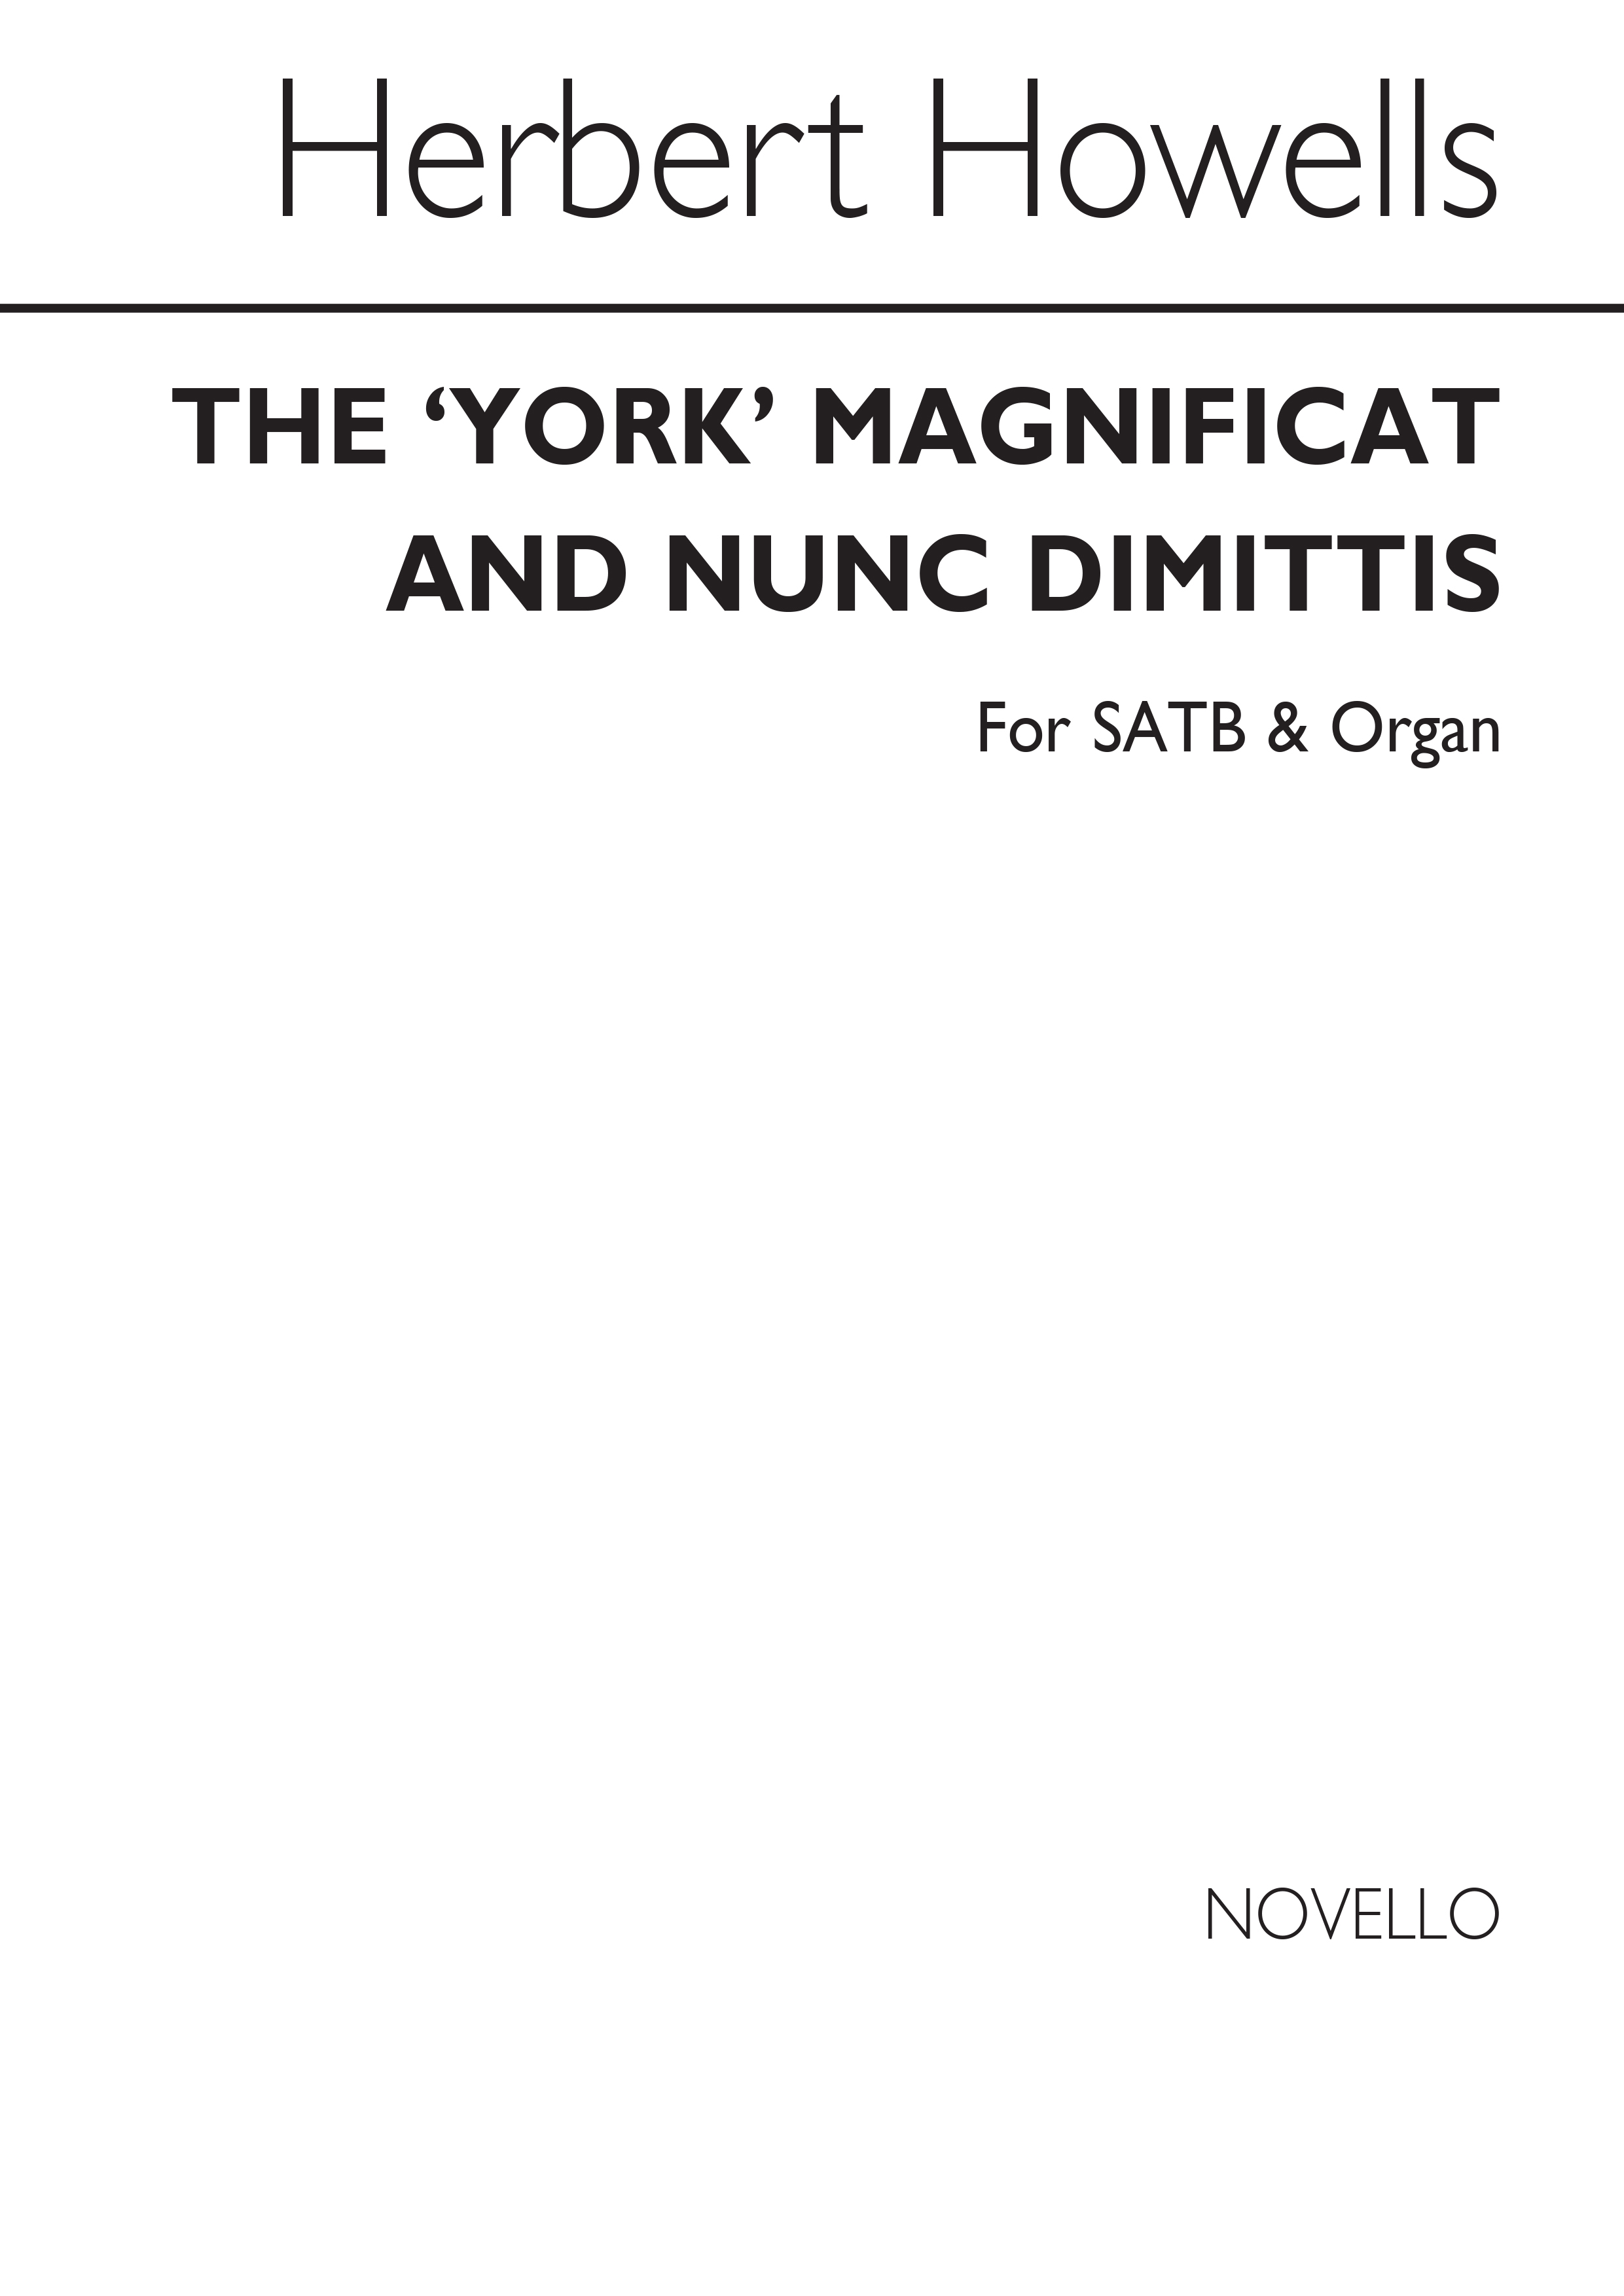 Herbert Howells: Magnificat & Nunc Dimittis (York)